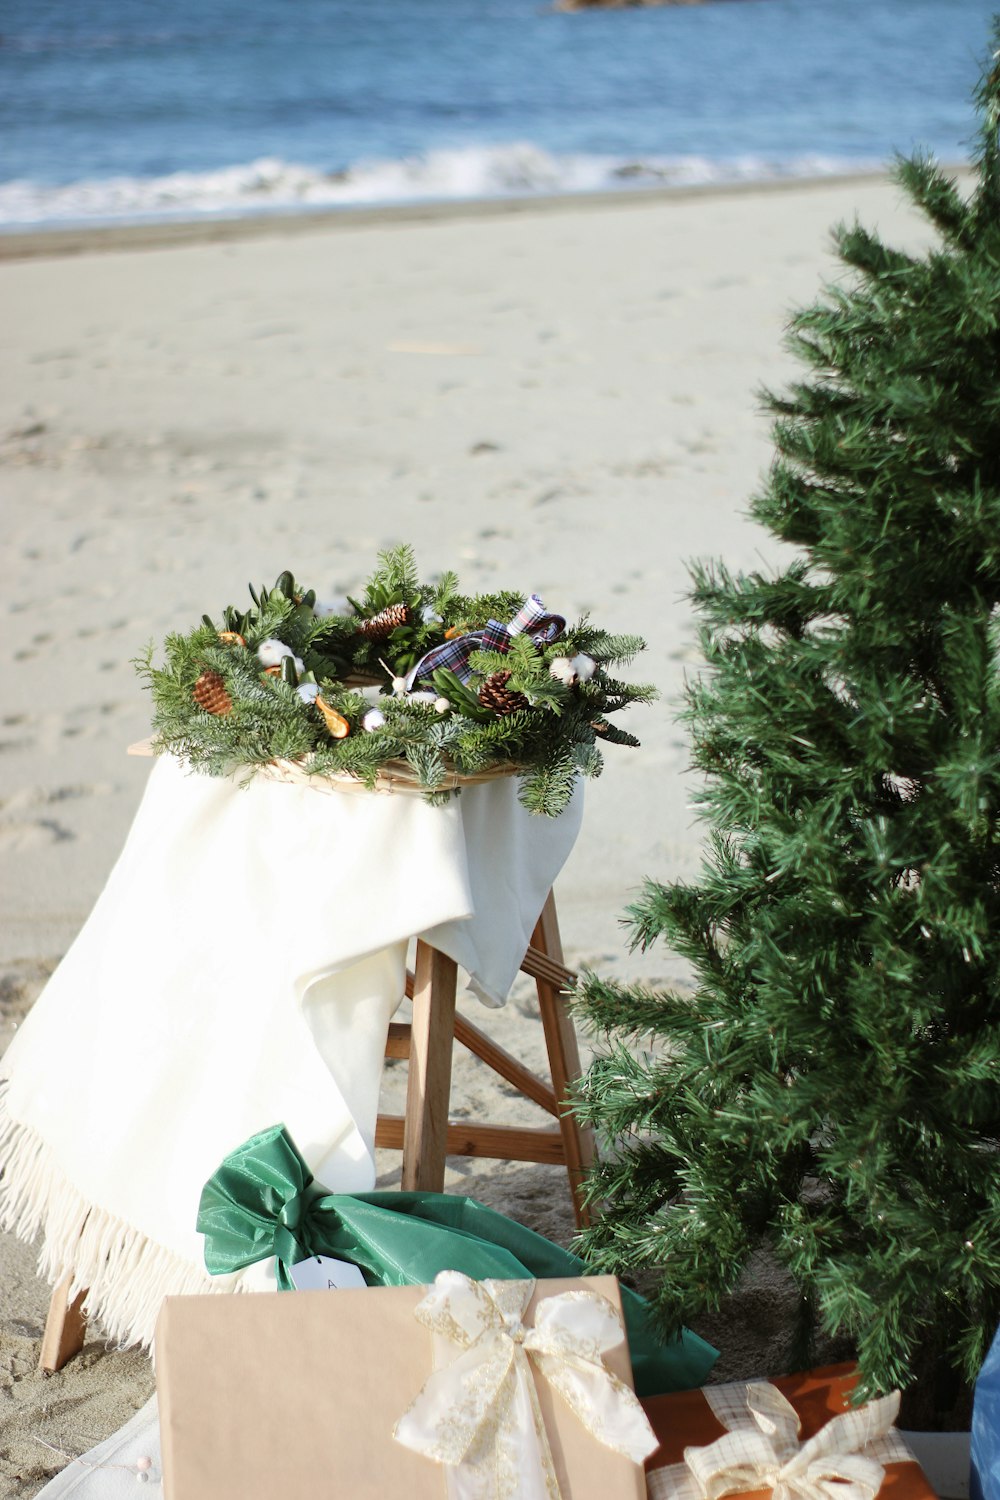 Un albero di Natale sulla spiaggia con regali sotto di esso